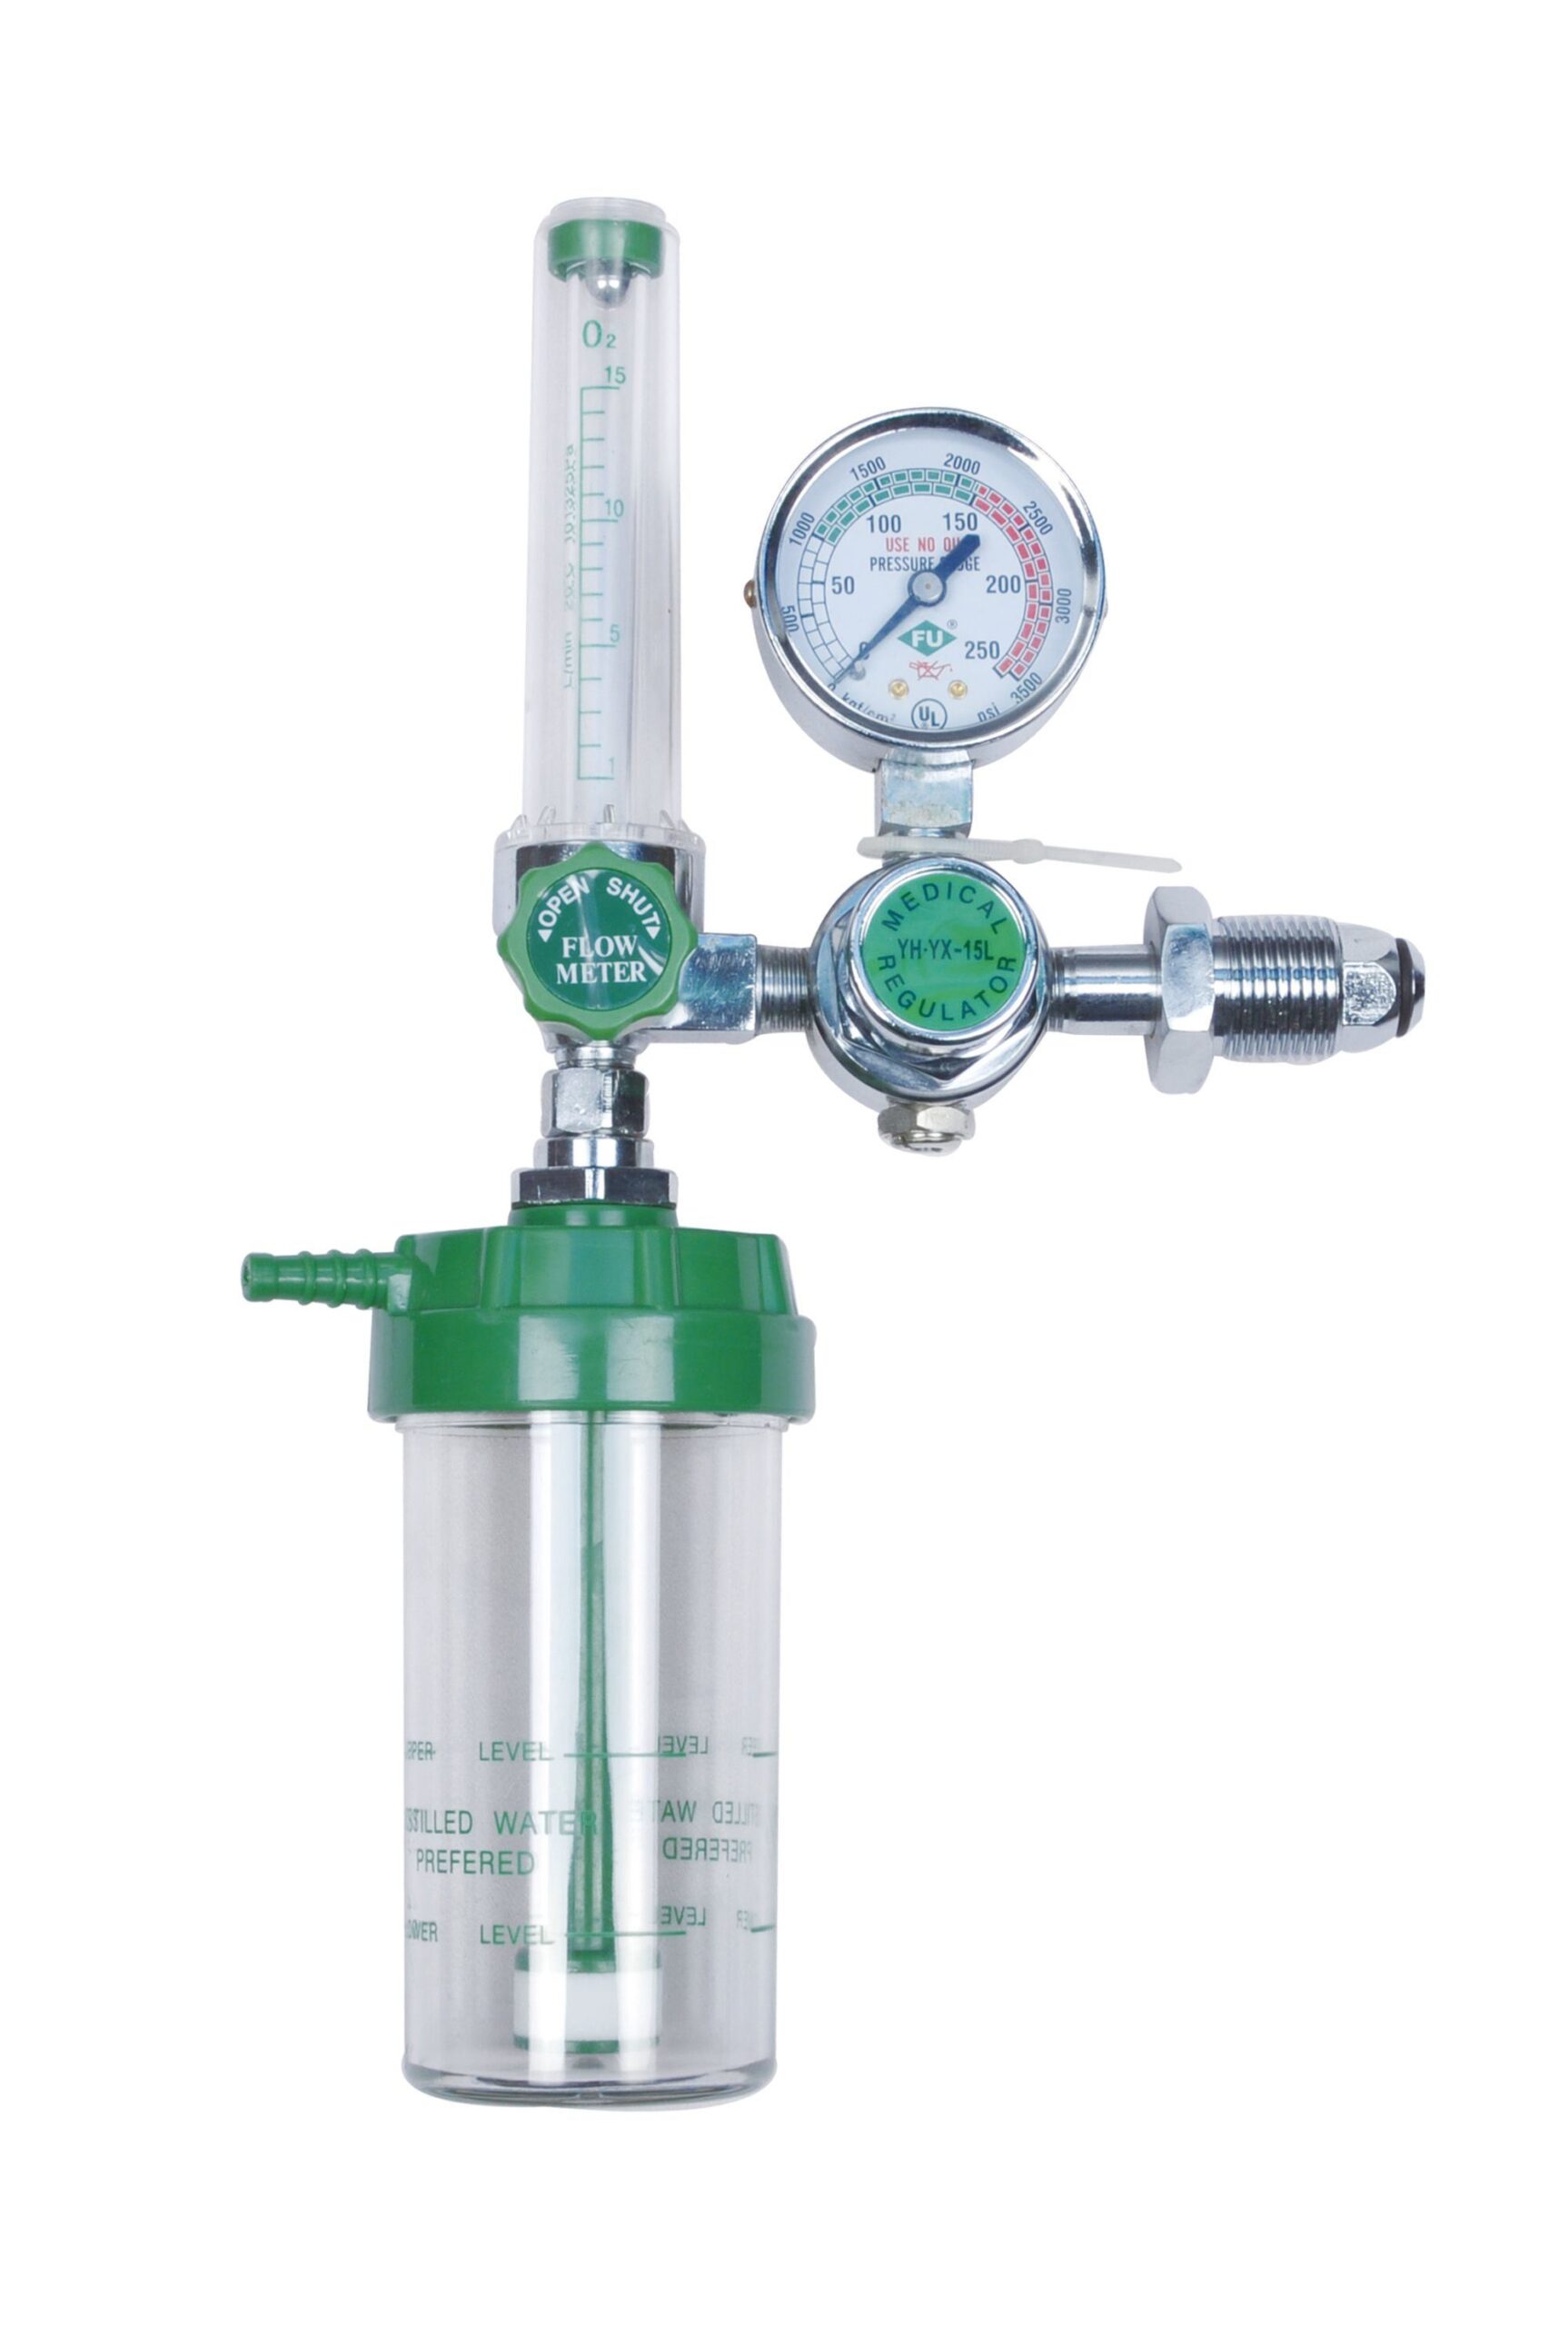 Medical-Oxygen-Regulator-with-Flowmeter-for-Oxygen-Cylinder-Medical-Equi